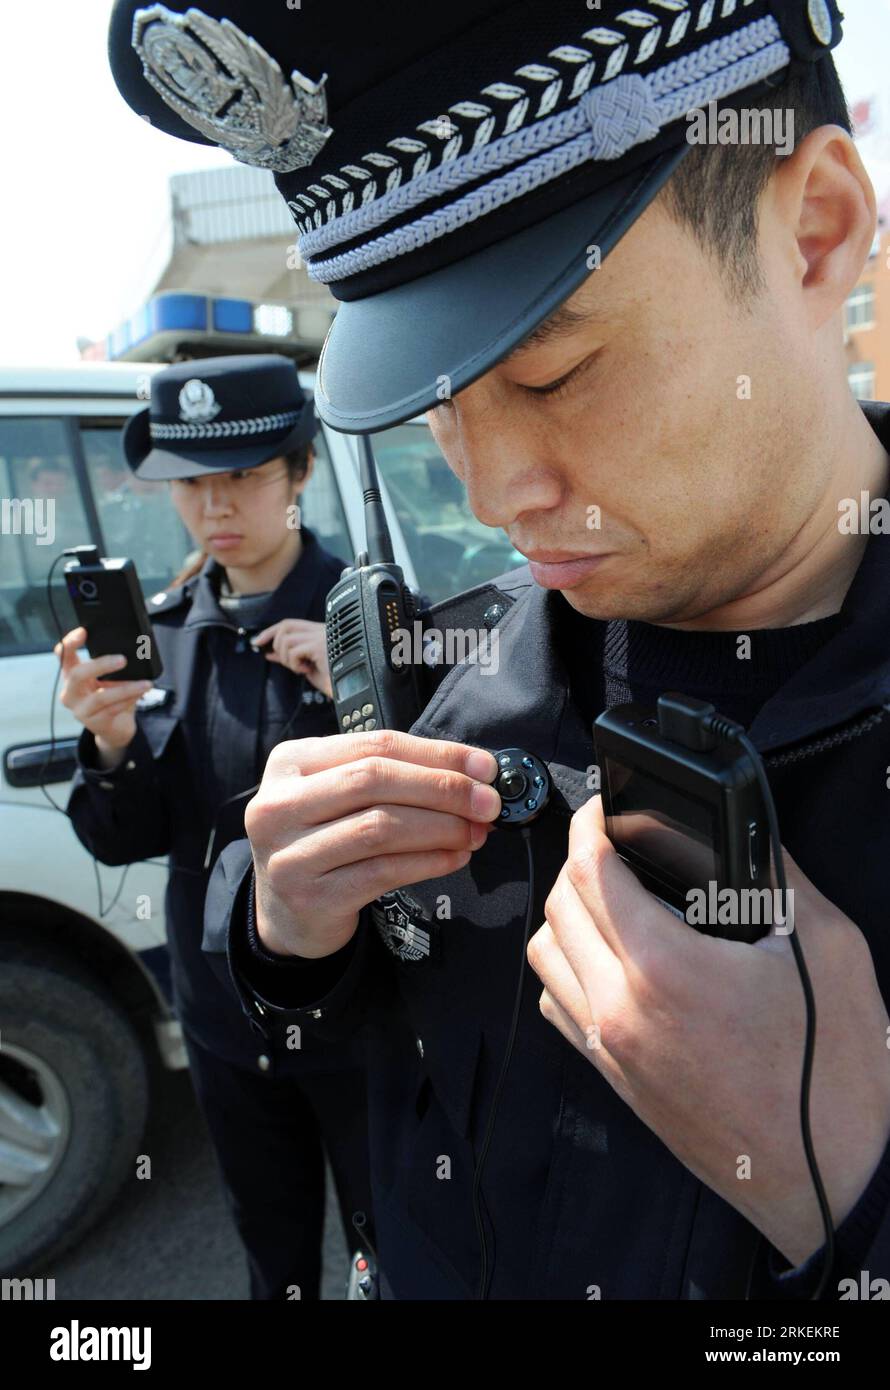 Bildnummer: 55271166 Datum: 18.04.2011 Copyright: imago/Xinhua (110418) -- QINGDAO, 18 aprile 2011 (Xinhua) -- un ufficiale di polizia equipaggia un nuovo strumento audiovisivo di registrazione delle forze dell'ordine a Qingdao, nella provincia dello Shandong della Cina orientale, 18 aprile 2011. L'ufficio di pubblica sicurezza di Qingdao ha iniziato nei giorni scorsi a dotare i suoi agenti di polizia del nuovo tipo di strumento di registrazione per supervisionare il processo di applicazione della legge. Questo modo era quello di migliorare le prestazioni dei poliziotti in autodisciplina e autoprotezione, hanno detto le autorità locali. (Xinhua/li Ziheng) (zn) CHINA-SHANDONG Foto Stock